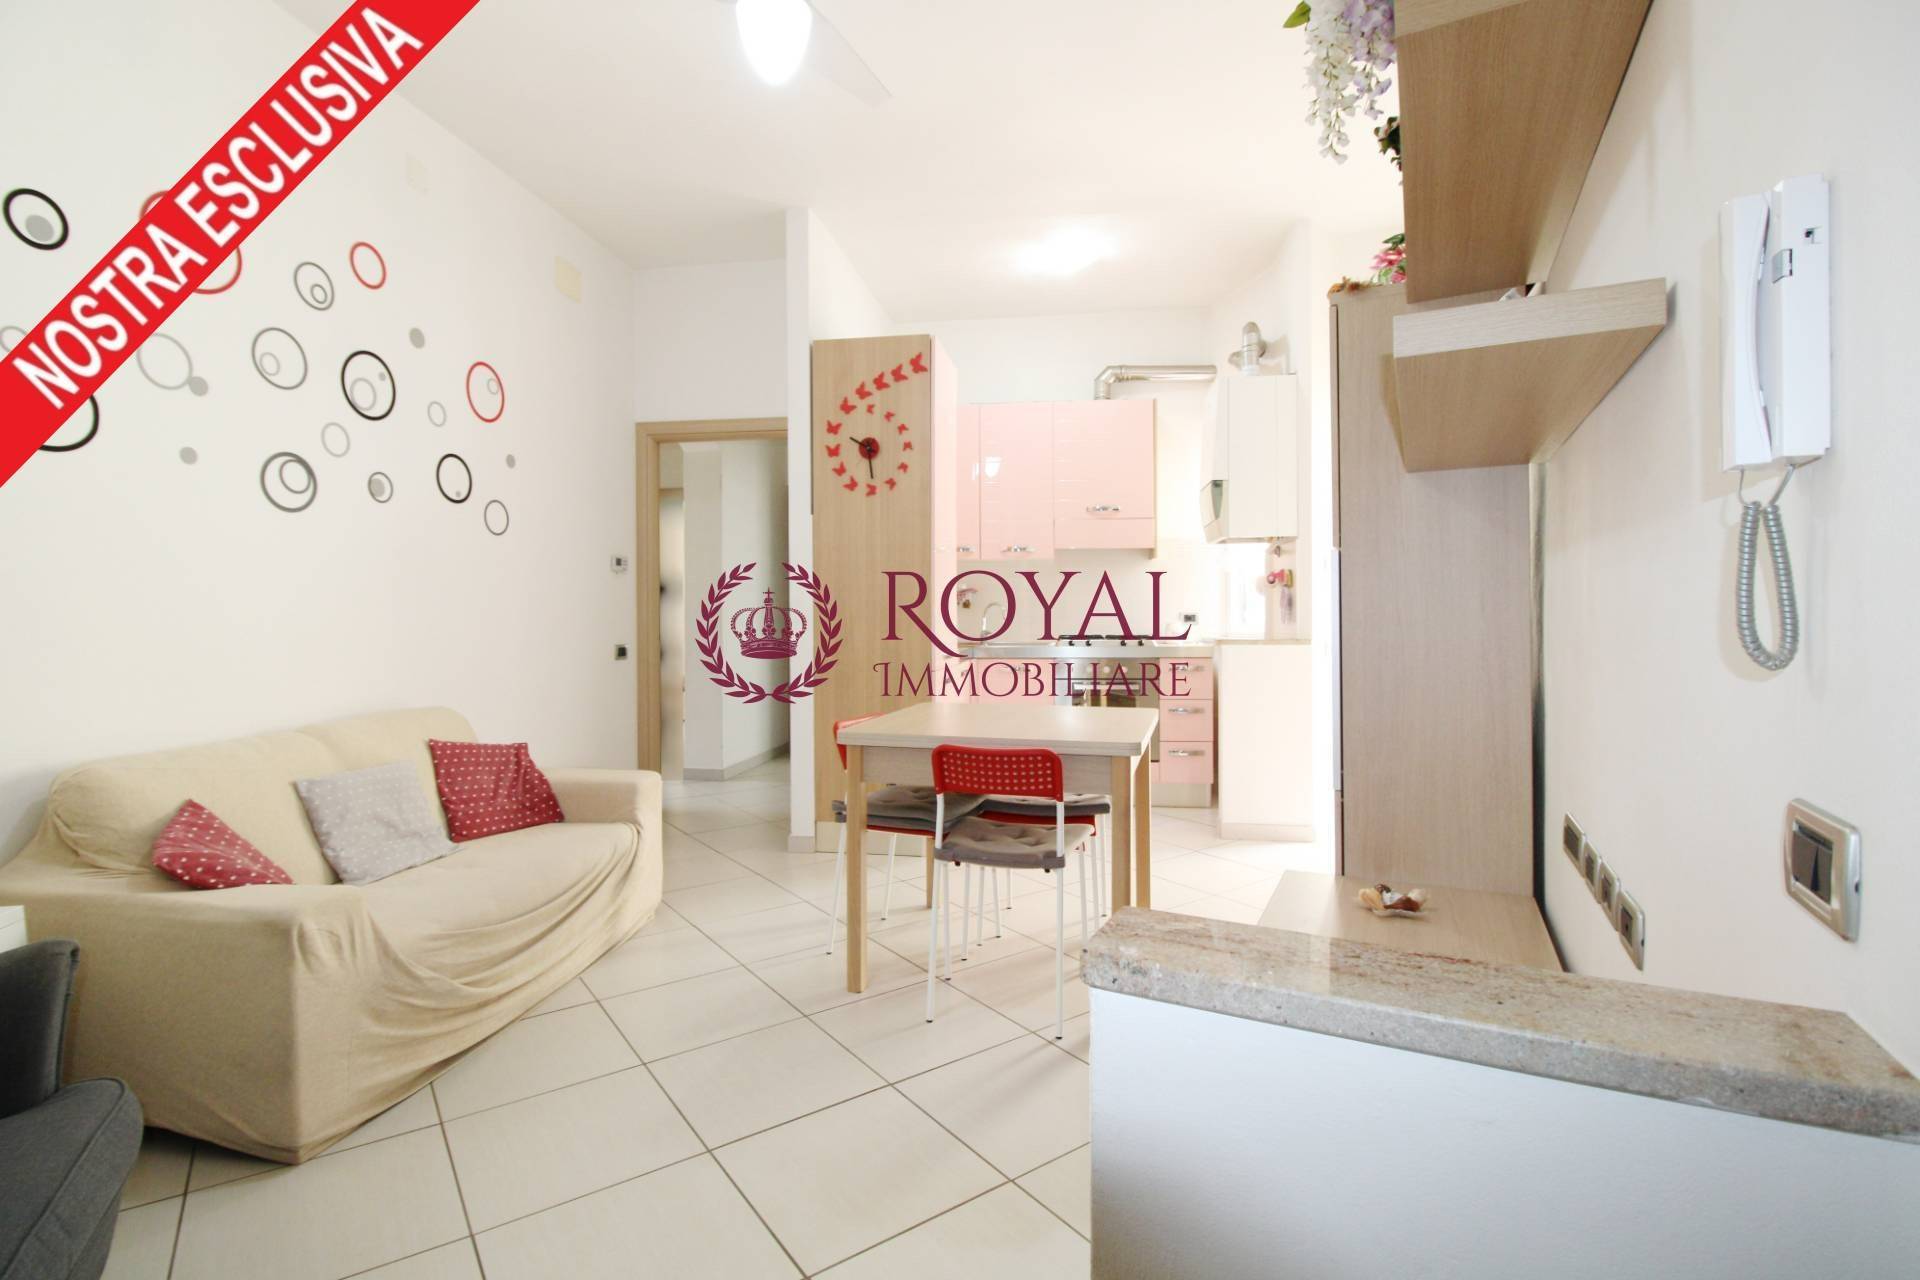 Appartamento in vendita a Livorno, 3 locali, zona Località: Cavour, prezzo € 114.000 | PortaleAgenzieImmobiliari.it